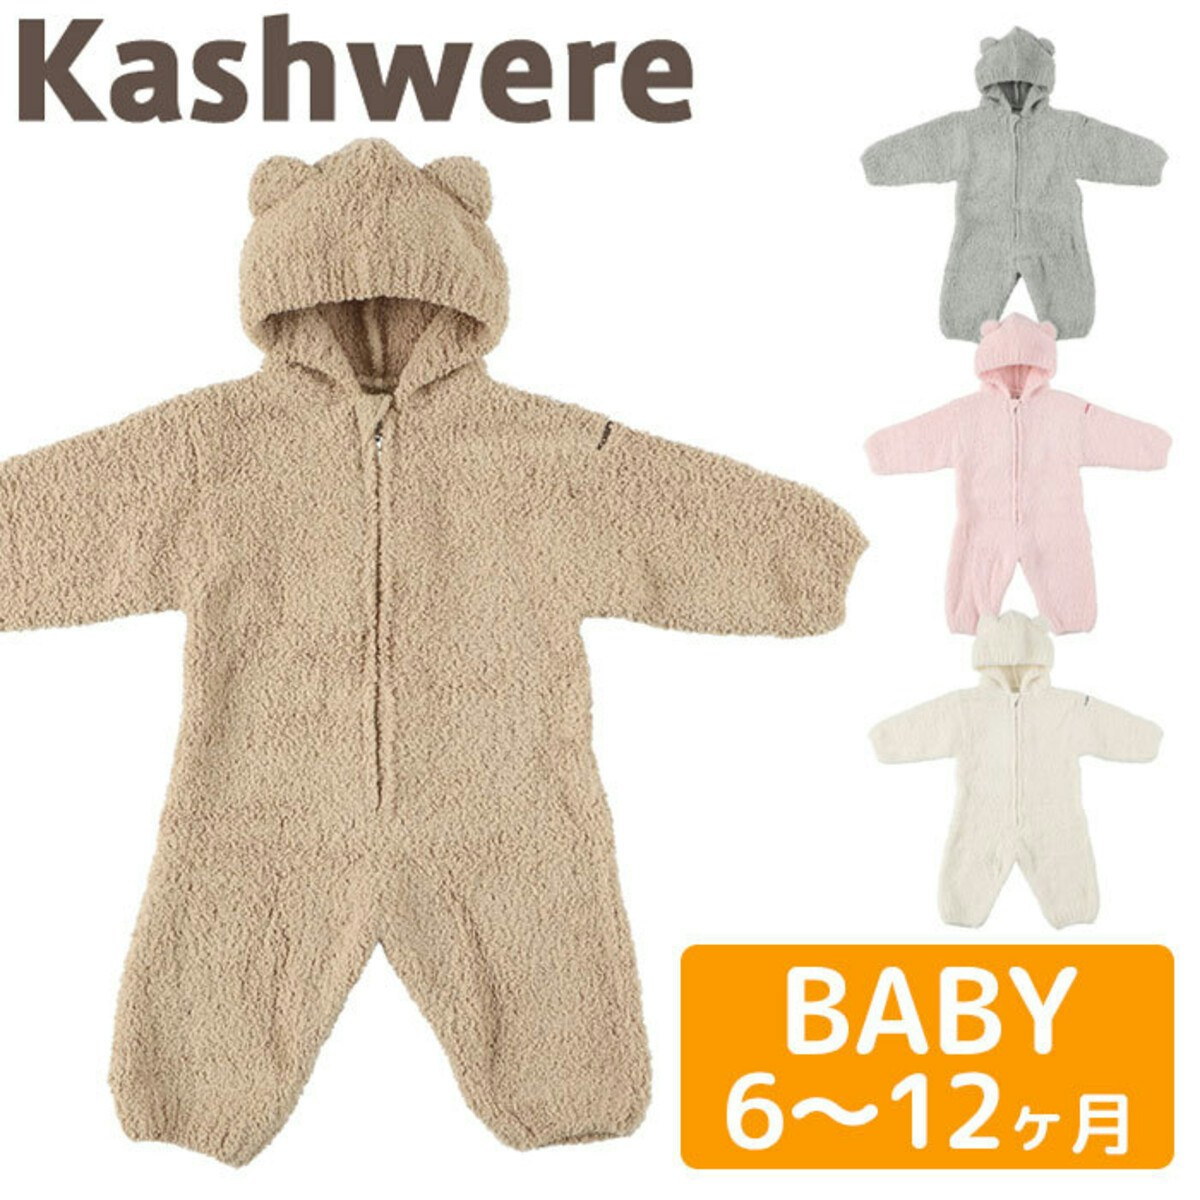 カシウェア ベビースーツ kashwere Baby Bearsuit カシウエア ロンパース カバーオール ベビー 着ぐるみ くま かわいい ベビー服 赤ちゃん ギフト 出産祝い